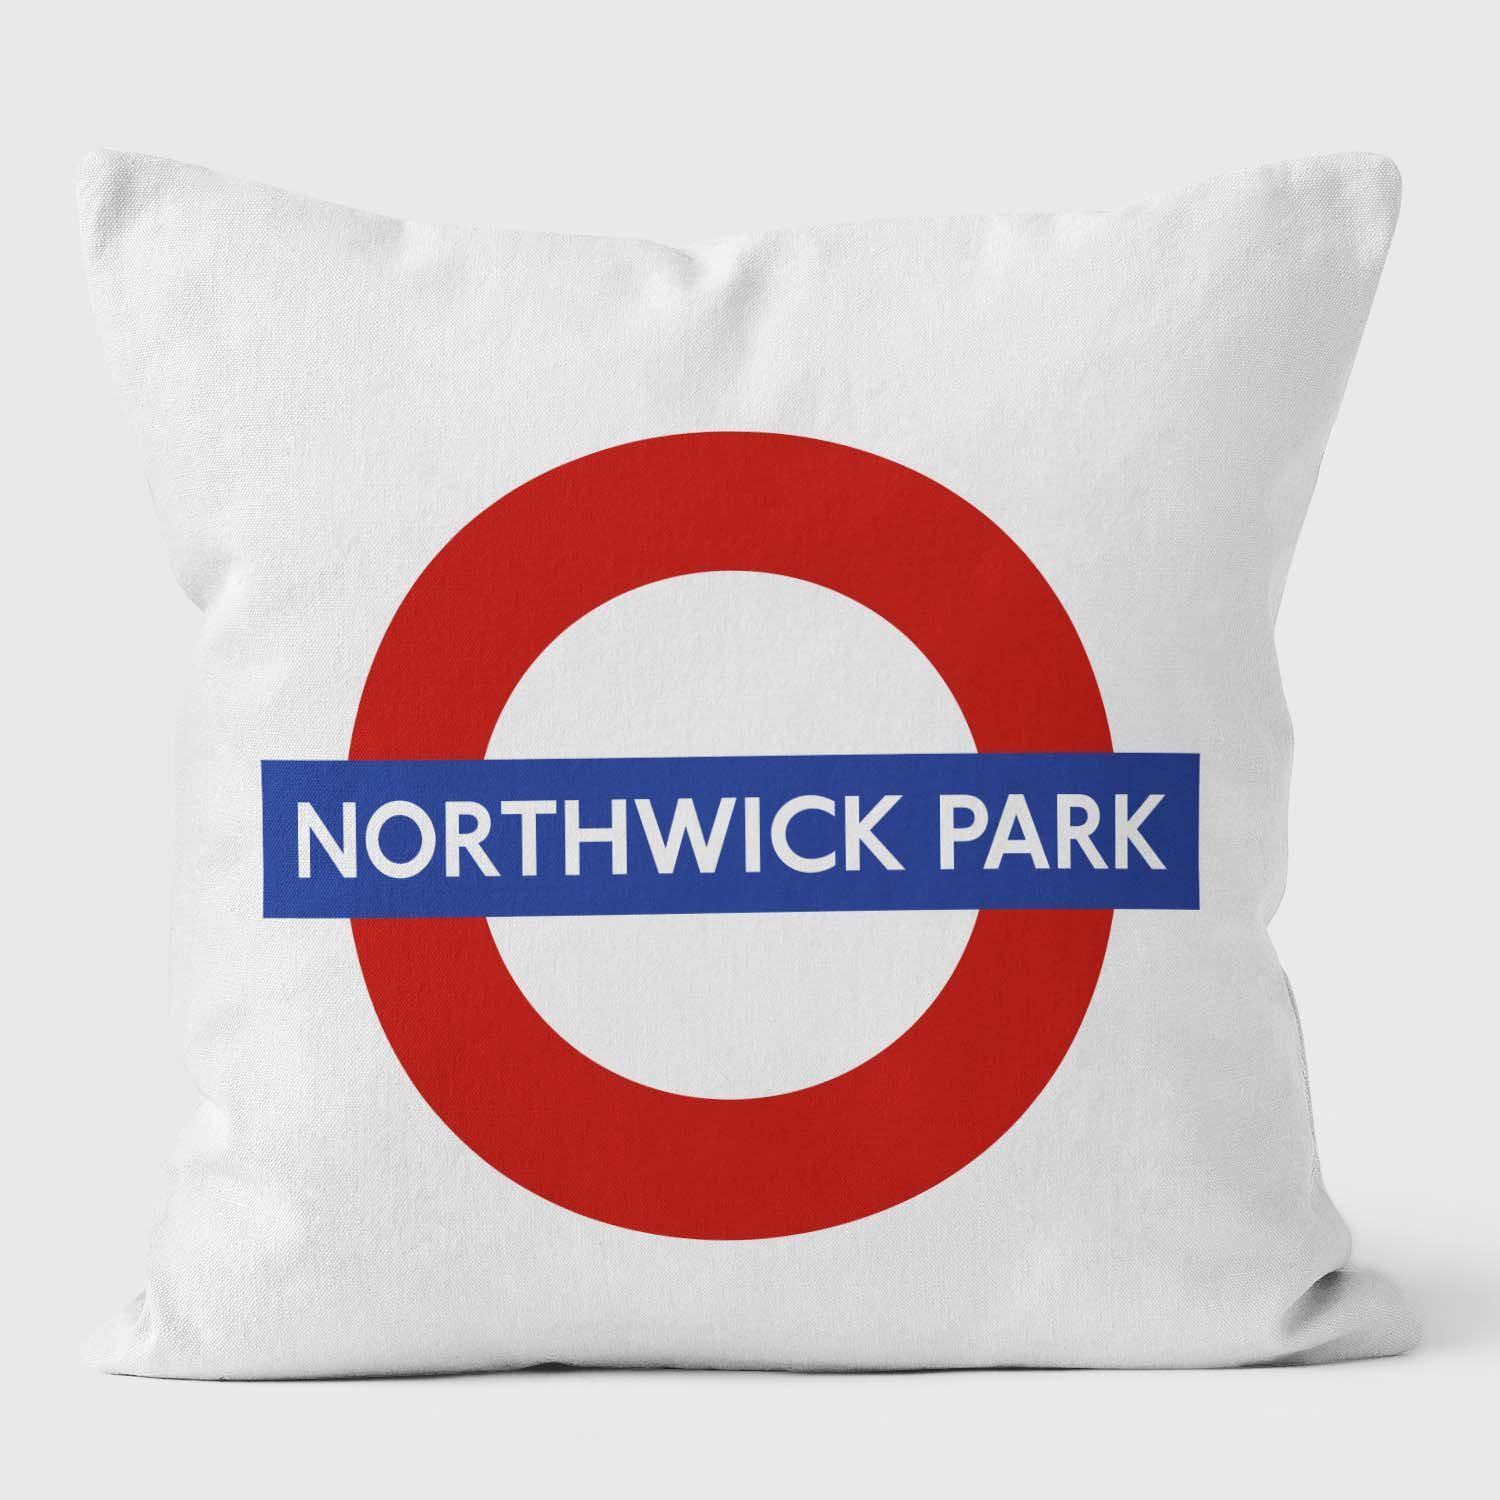 Northwick Park London Underground Tube Station Roundel Cushion - Handmade Cushions UK - WeLoveCushions